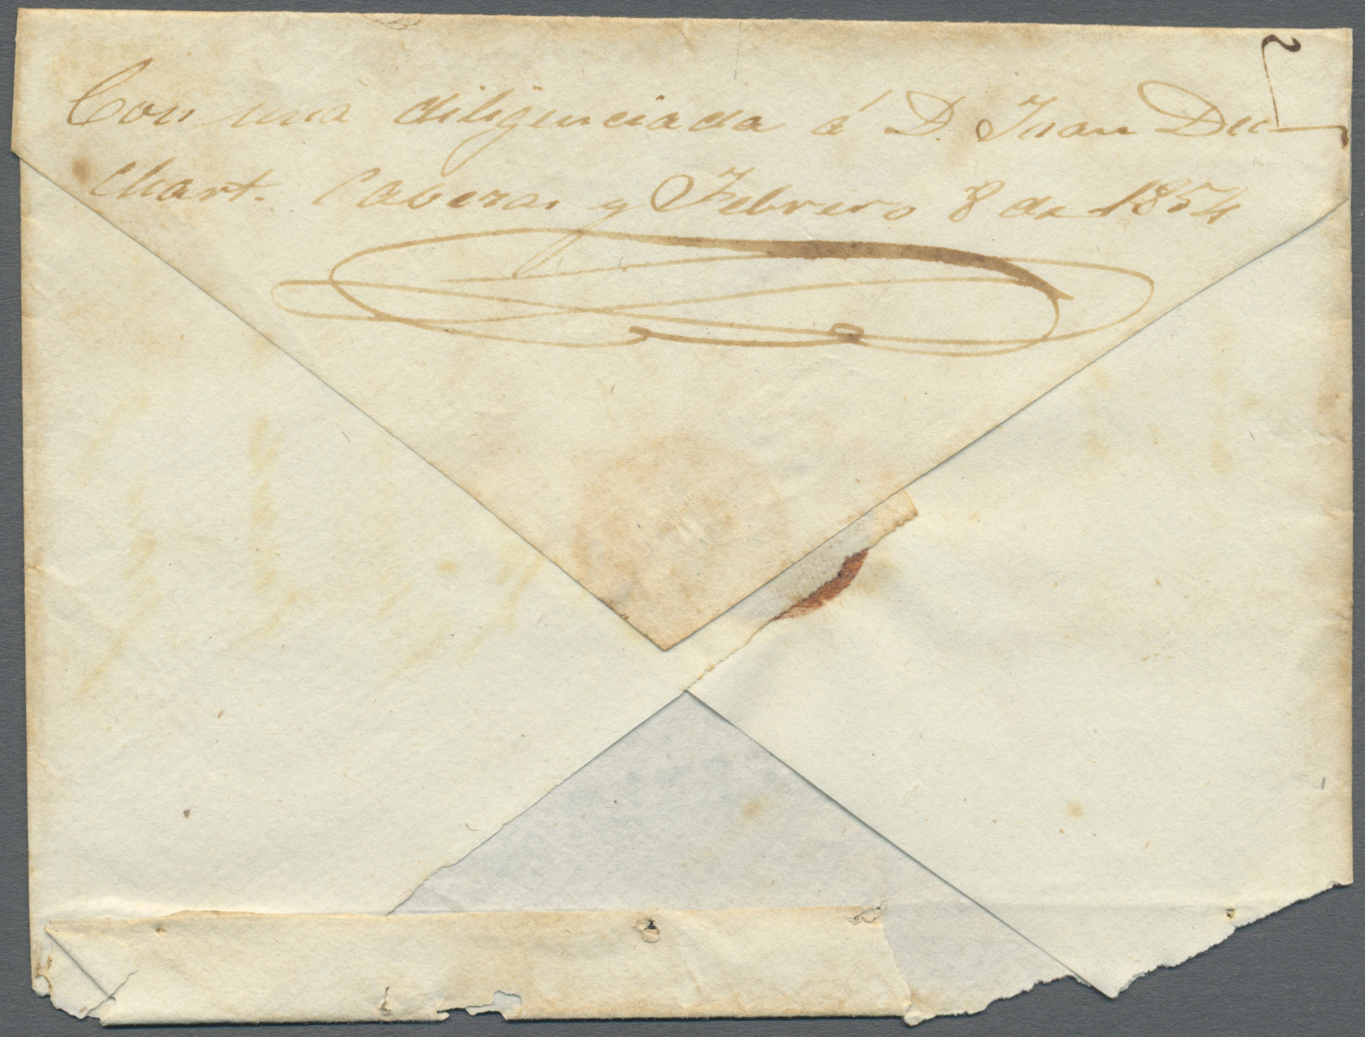 Br Spanien: 1854 CUBA (8 Feb) Cabezas A Matanzas. Sohe Manual Del Real Genazio. Marca "FERRO-CARRIL" (No 72) Line - Used Stamps